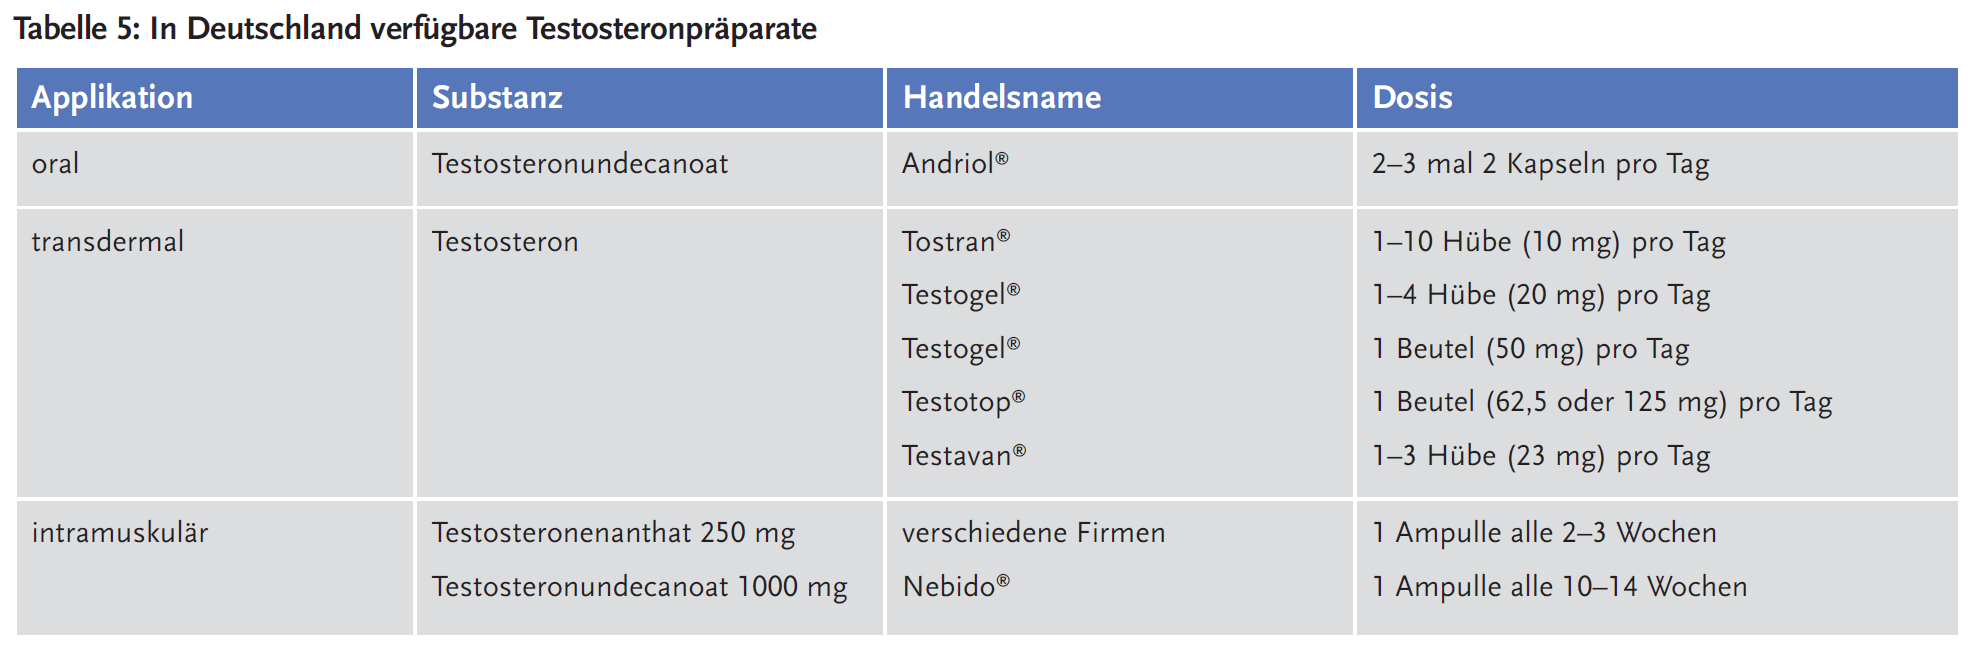 Tabelle 5: In Deutschland verfügbare Testosteronpräparate